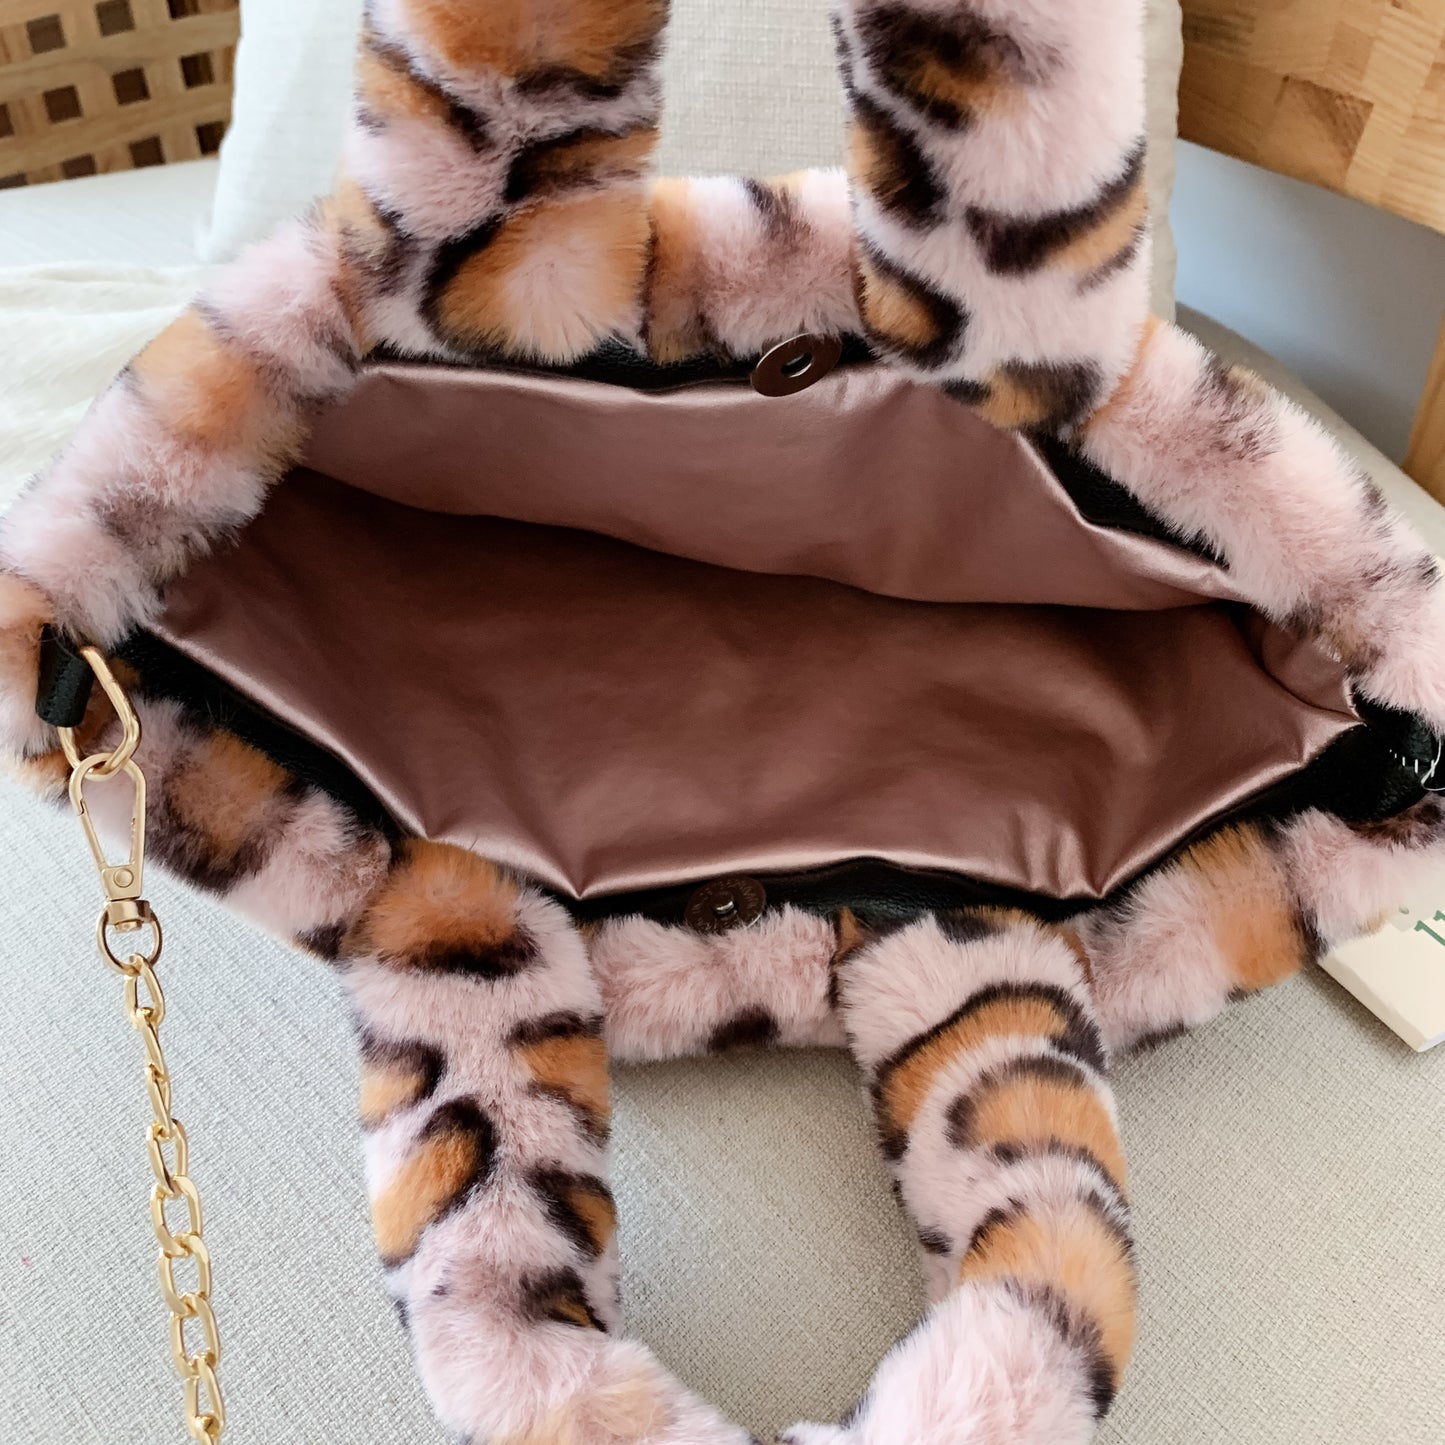 Winter new fashion shoulder bag female leopard female bag chain large plush winter handbag Messenger bag soft warm fur bag ShopOnlyDeal